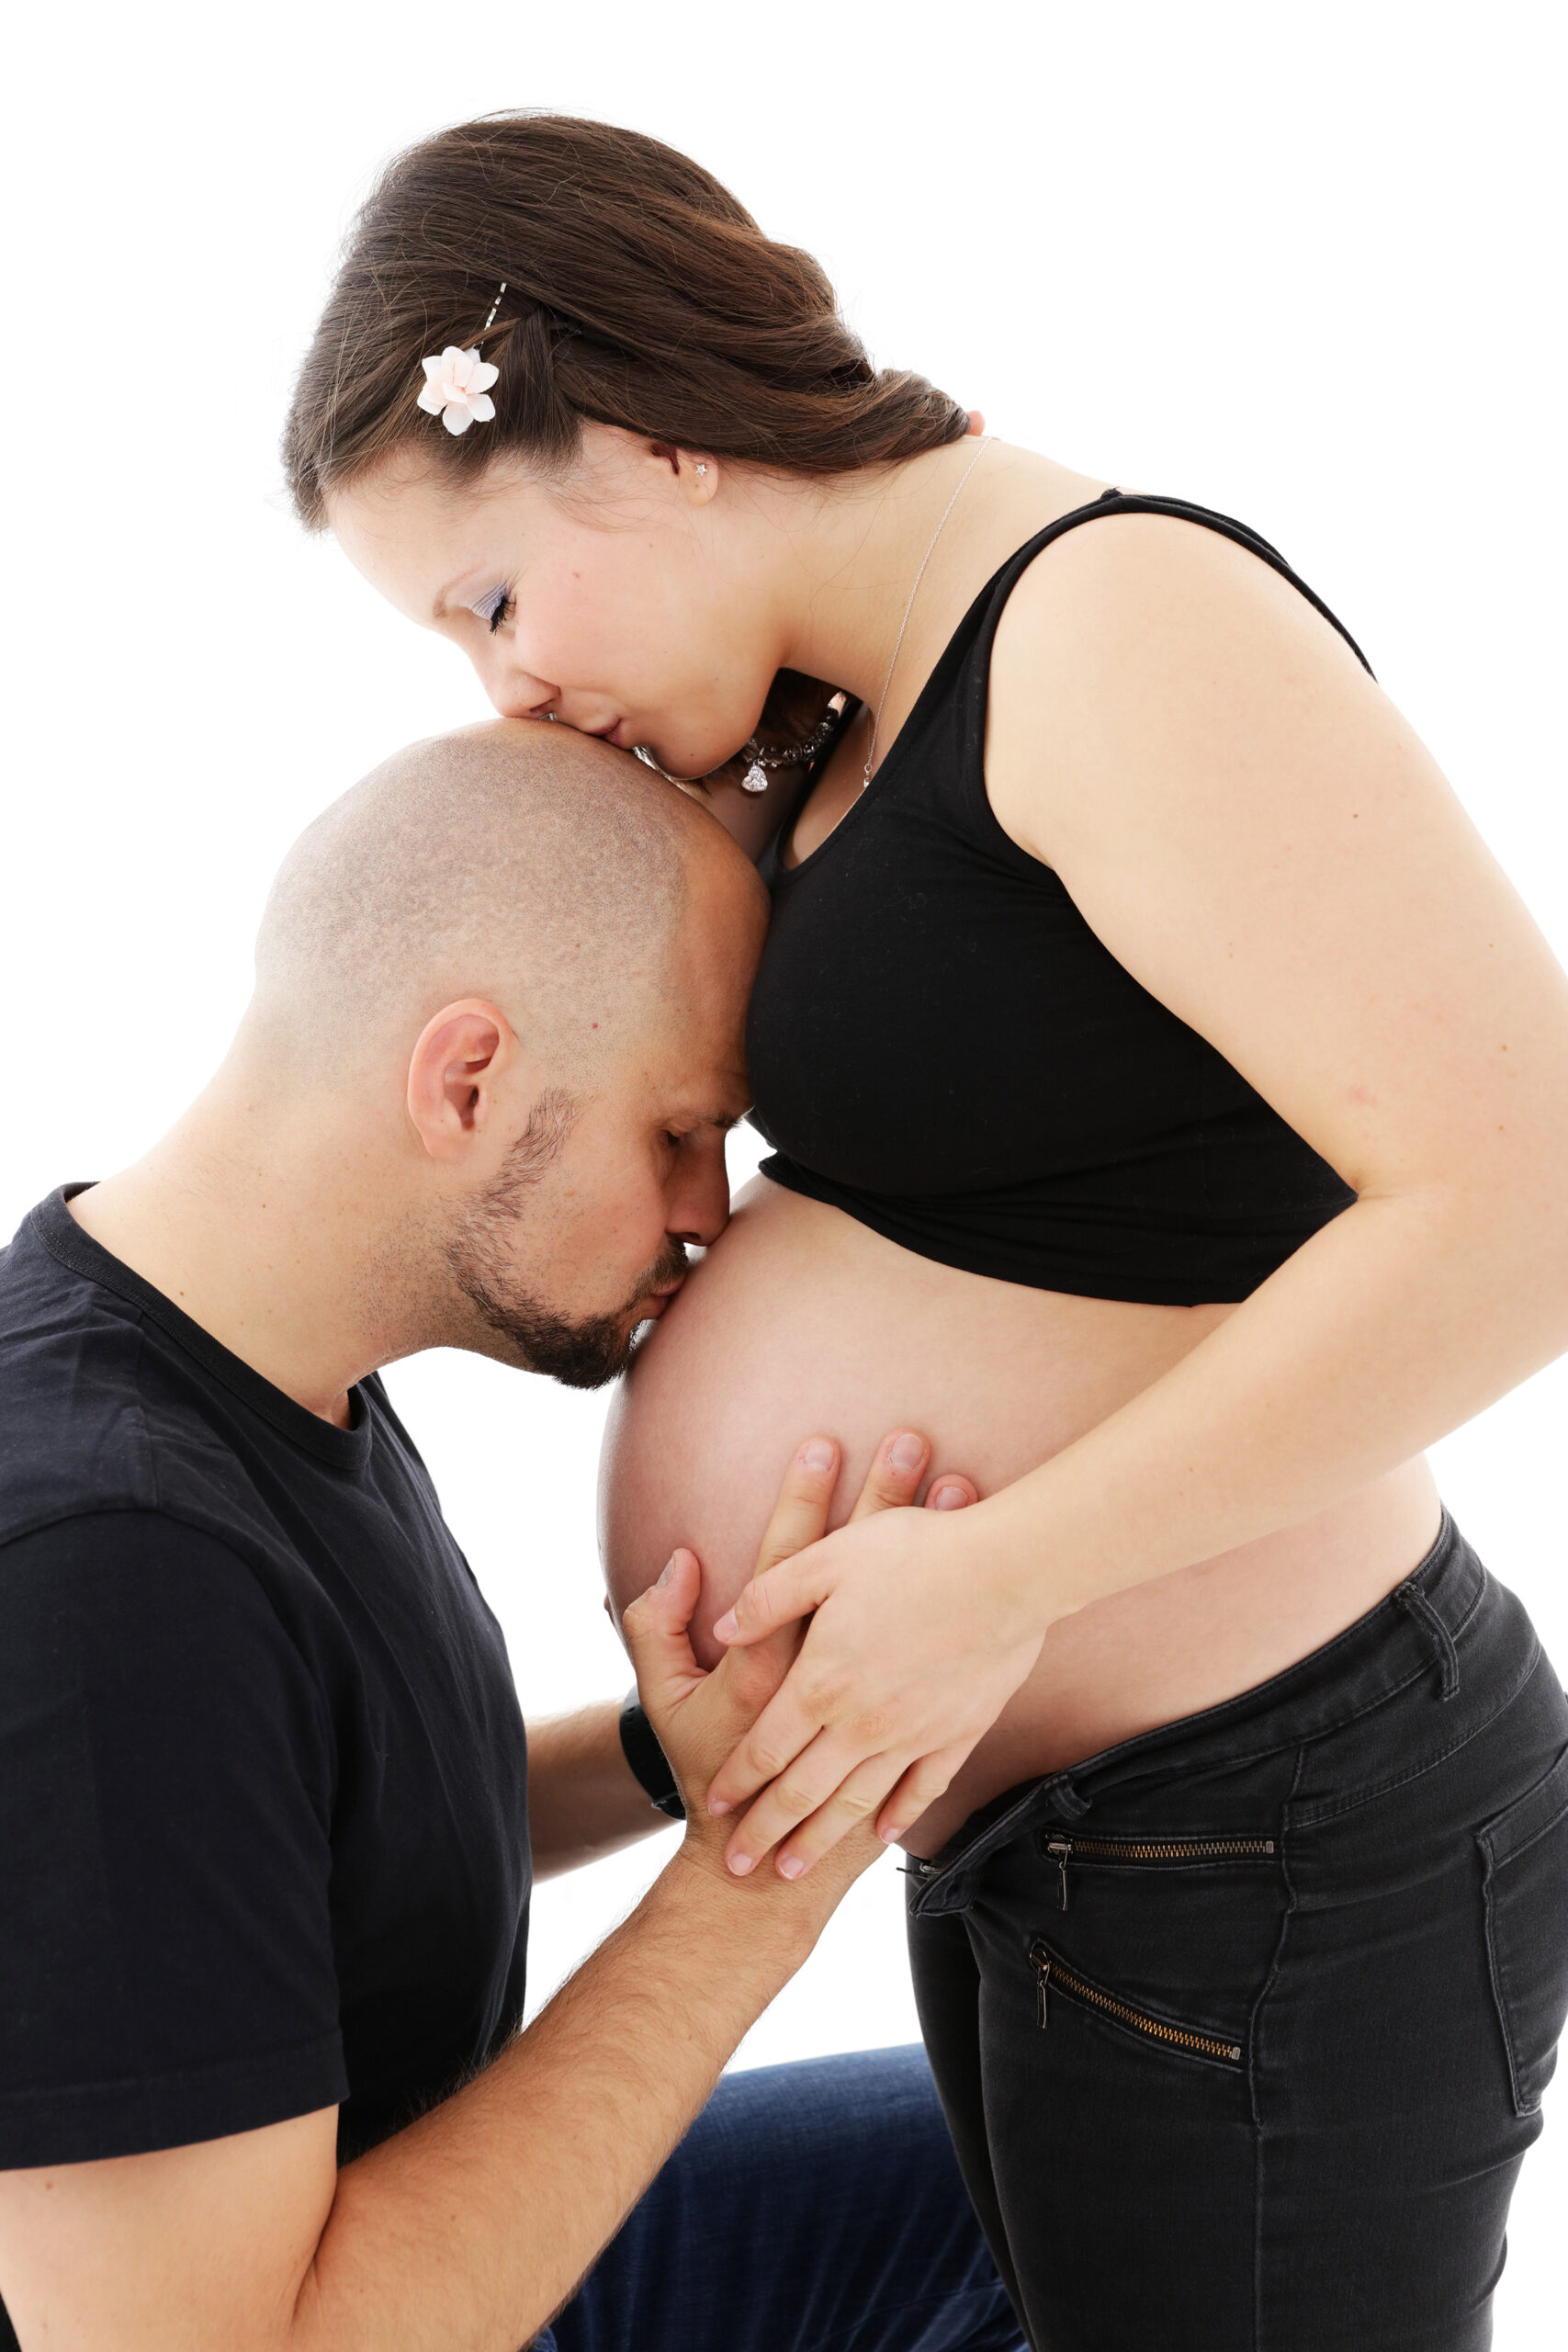 Zukünftige Eltern in liebevoller Umarmung, Mann küsst den schwangeren Bauch der Frau.